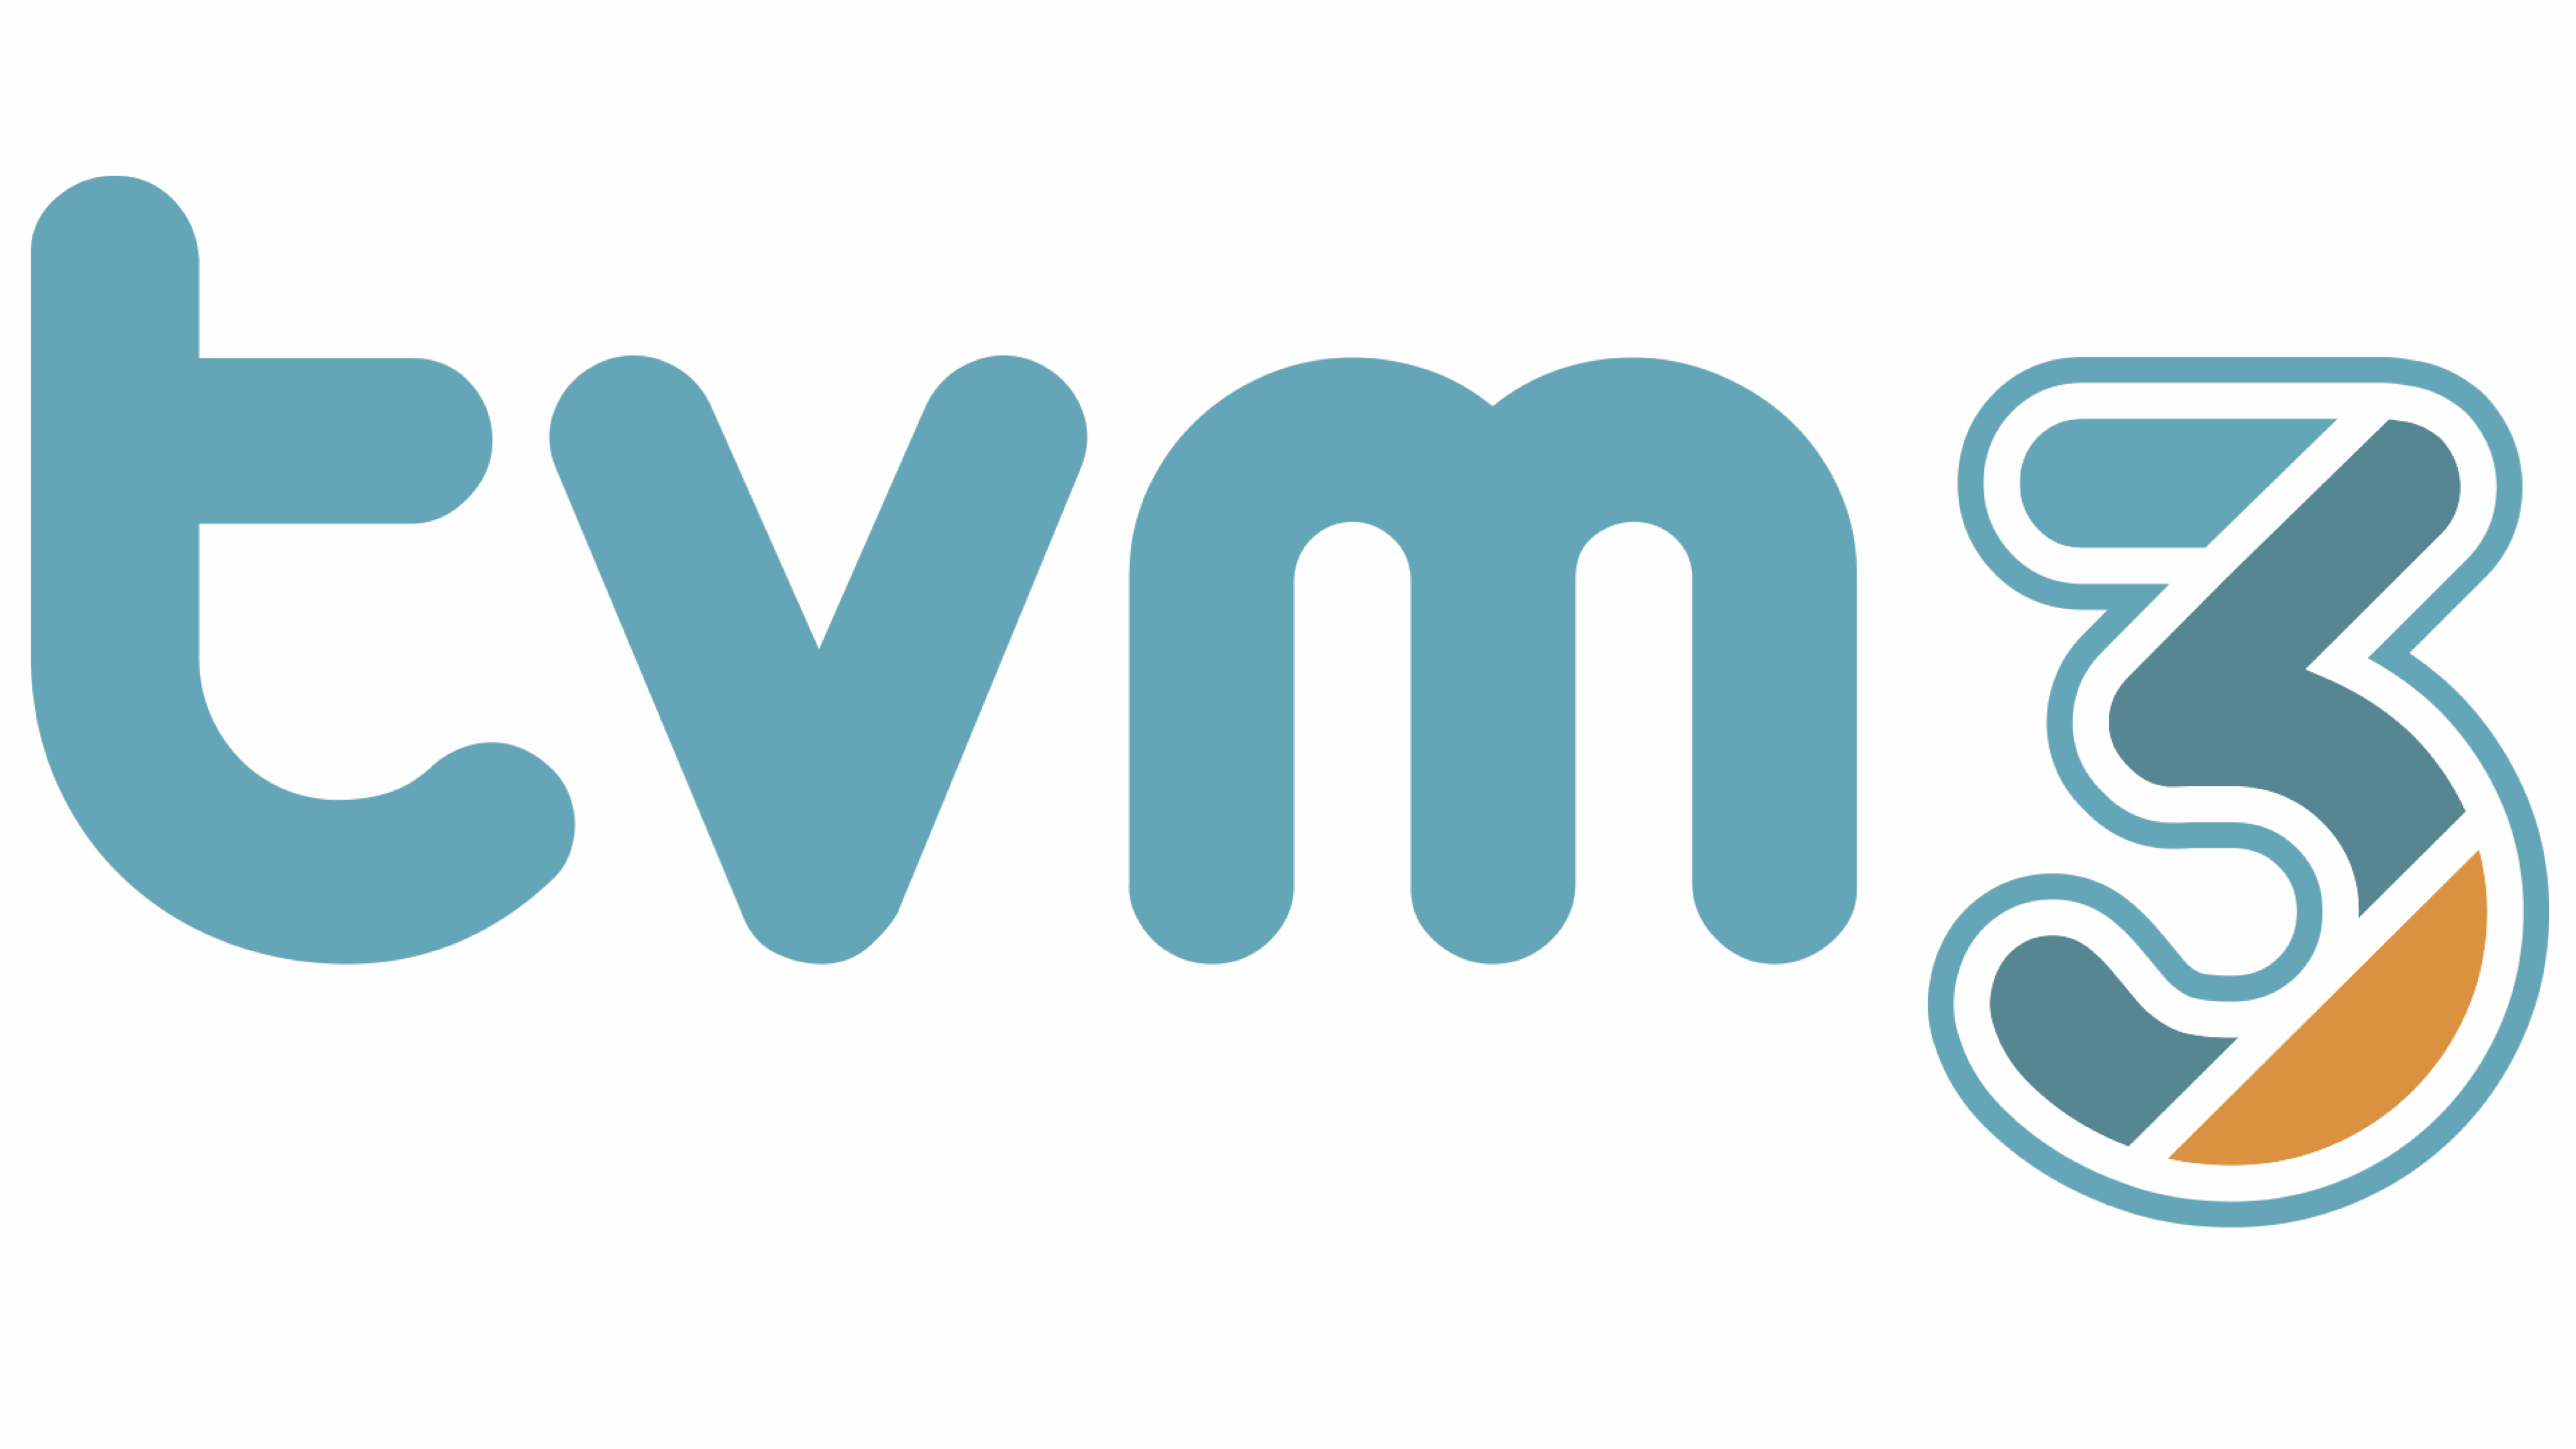 logo de tvm3